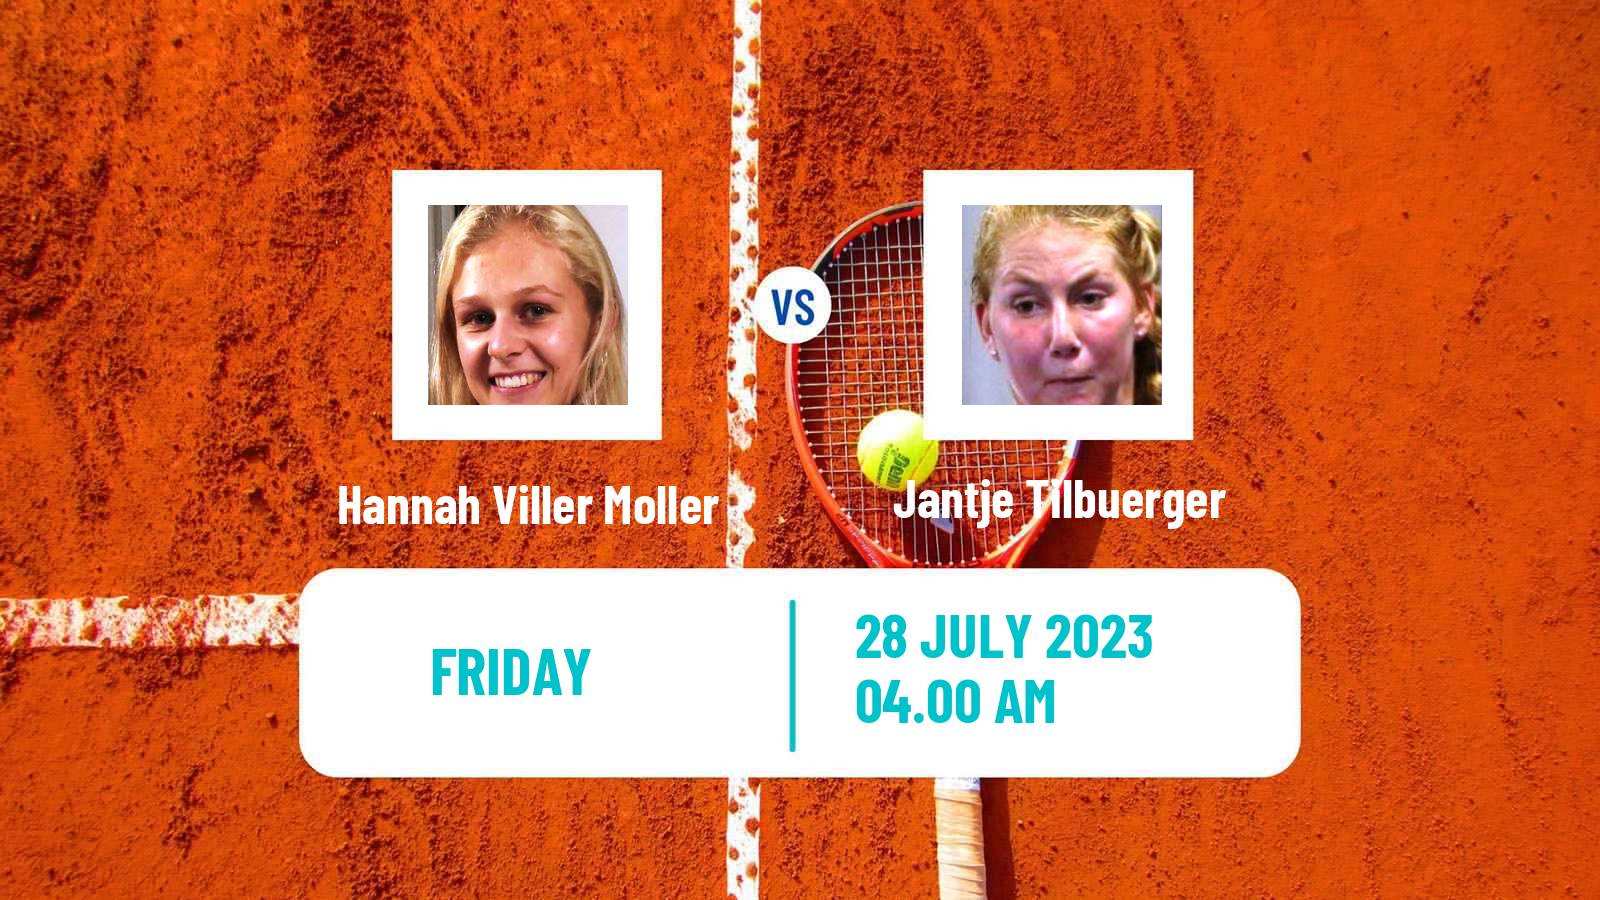 Tennis ITF W15 Vejle Women Hannah Viller Moller - Jantje Tilbuerger